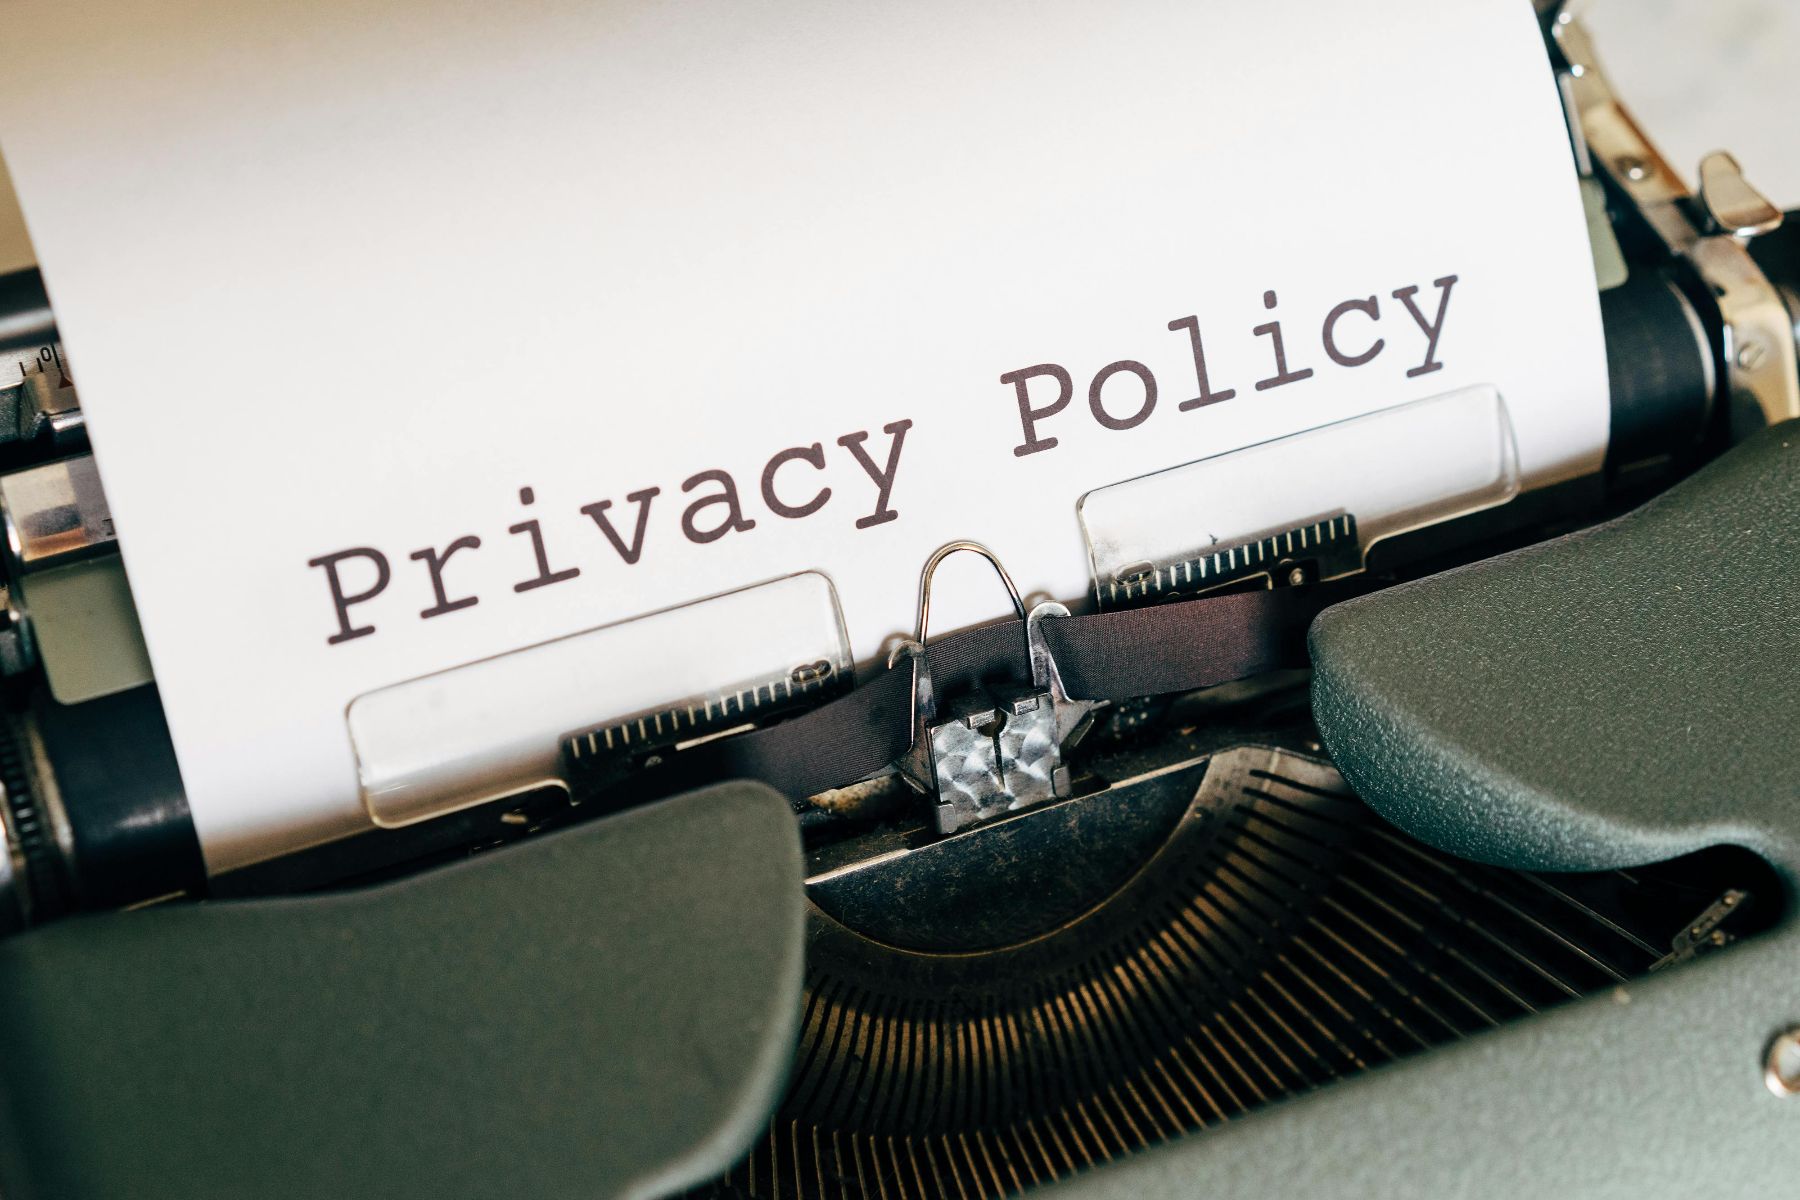 Blad papier met tekst "privacy policy" in typewriter